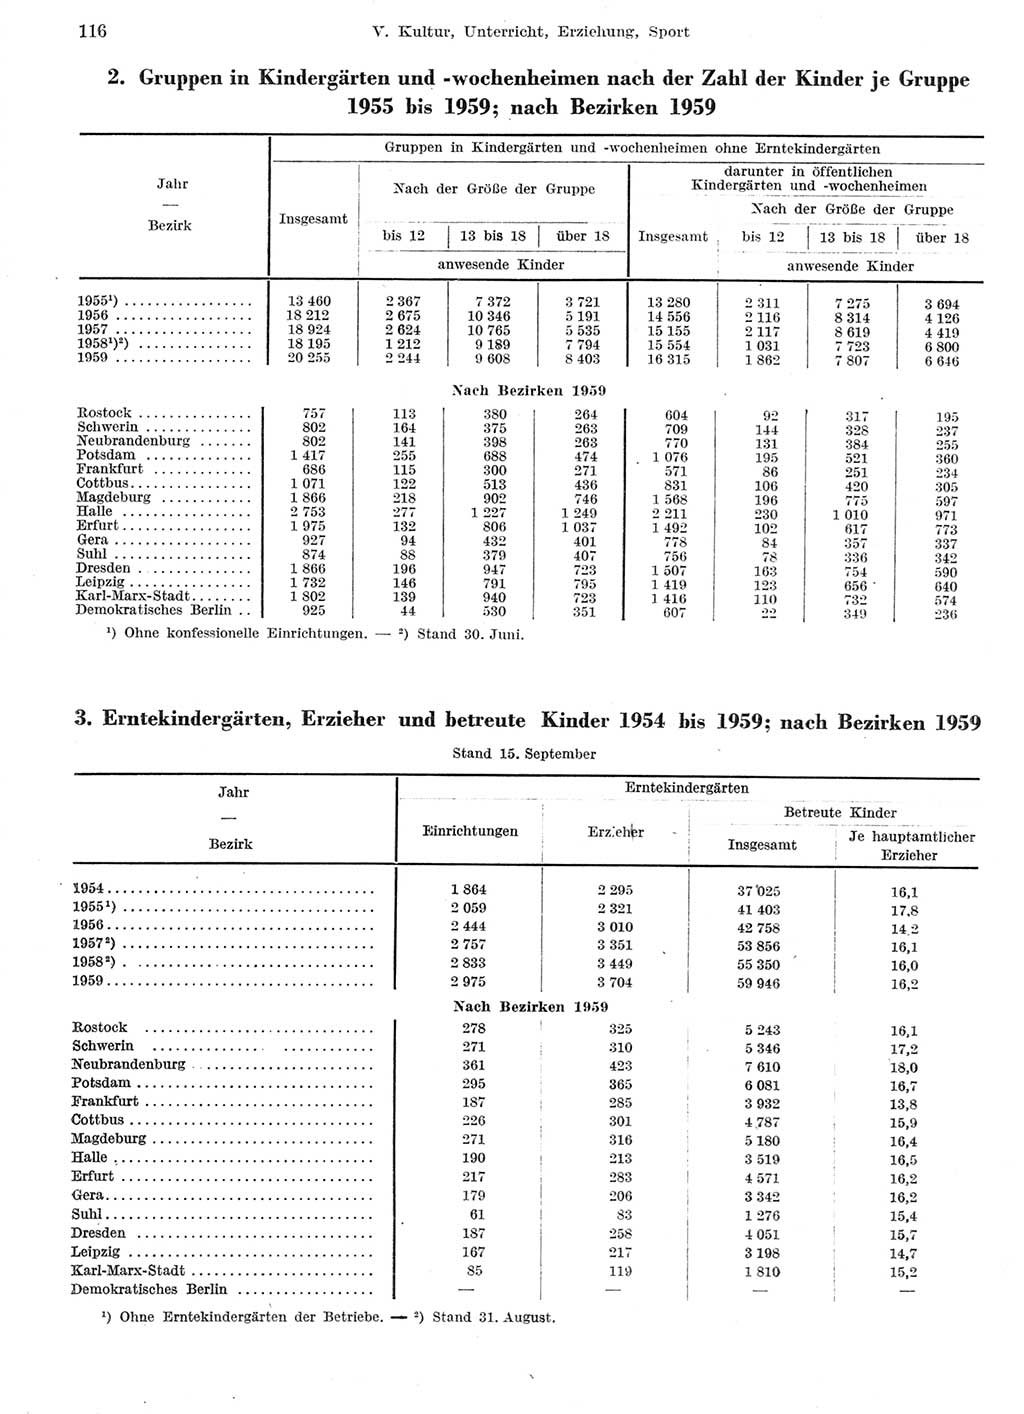 Statistisches Jahrbuch der Deutschen Demokratischen Republik (DDR) 1959, Seite 116 (Stat. Jb. DDR 1959, S. 116)